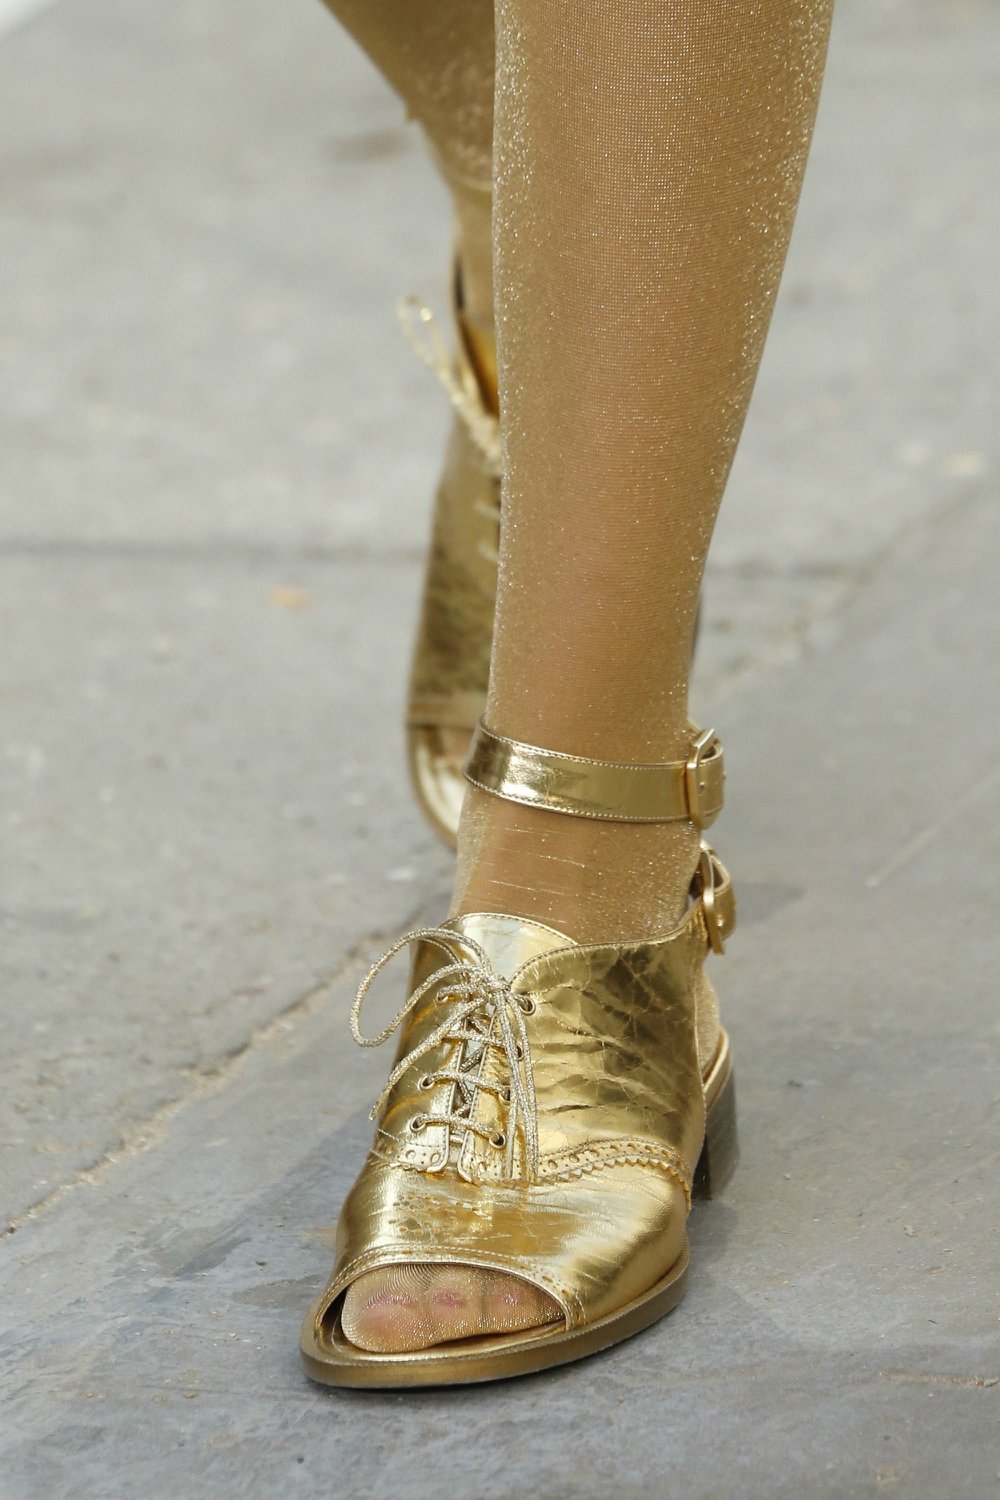 Какие Туфли Под Золотое Платье